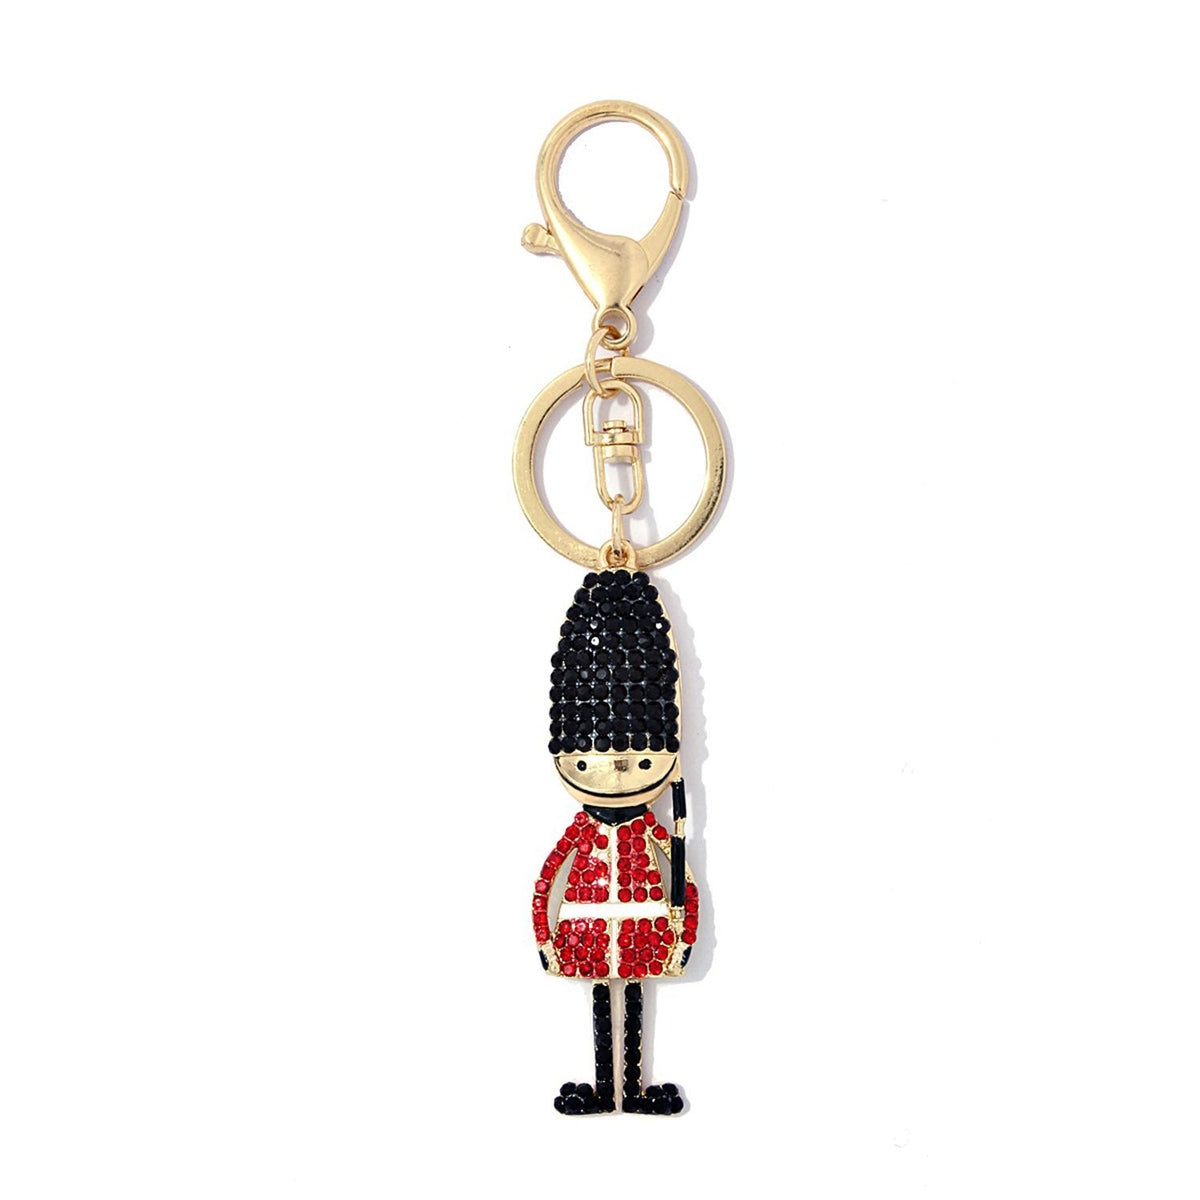 Queen Guard Key Chain - Key Chains